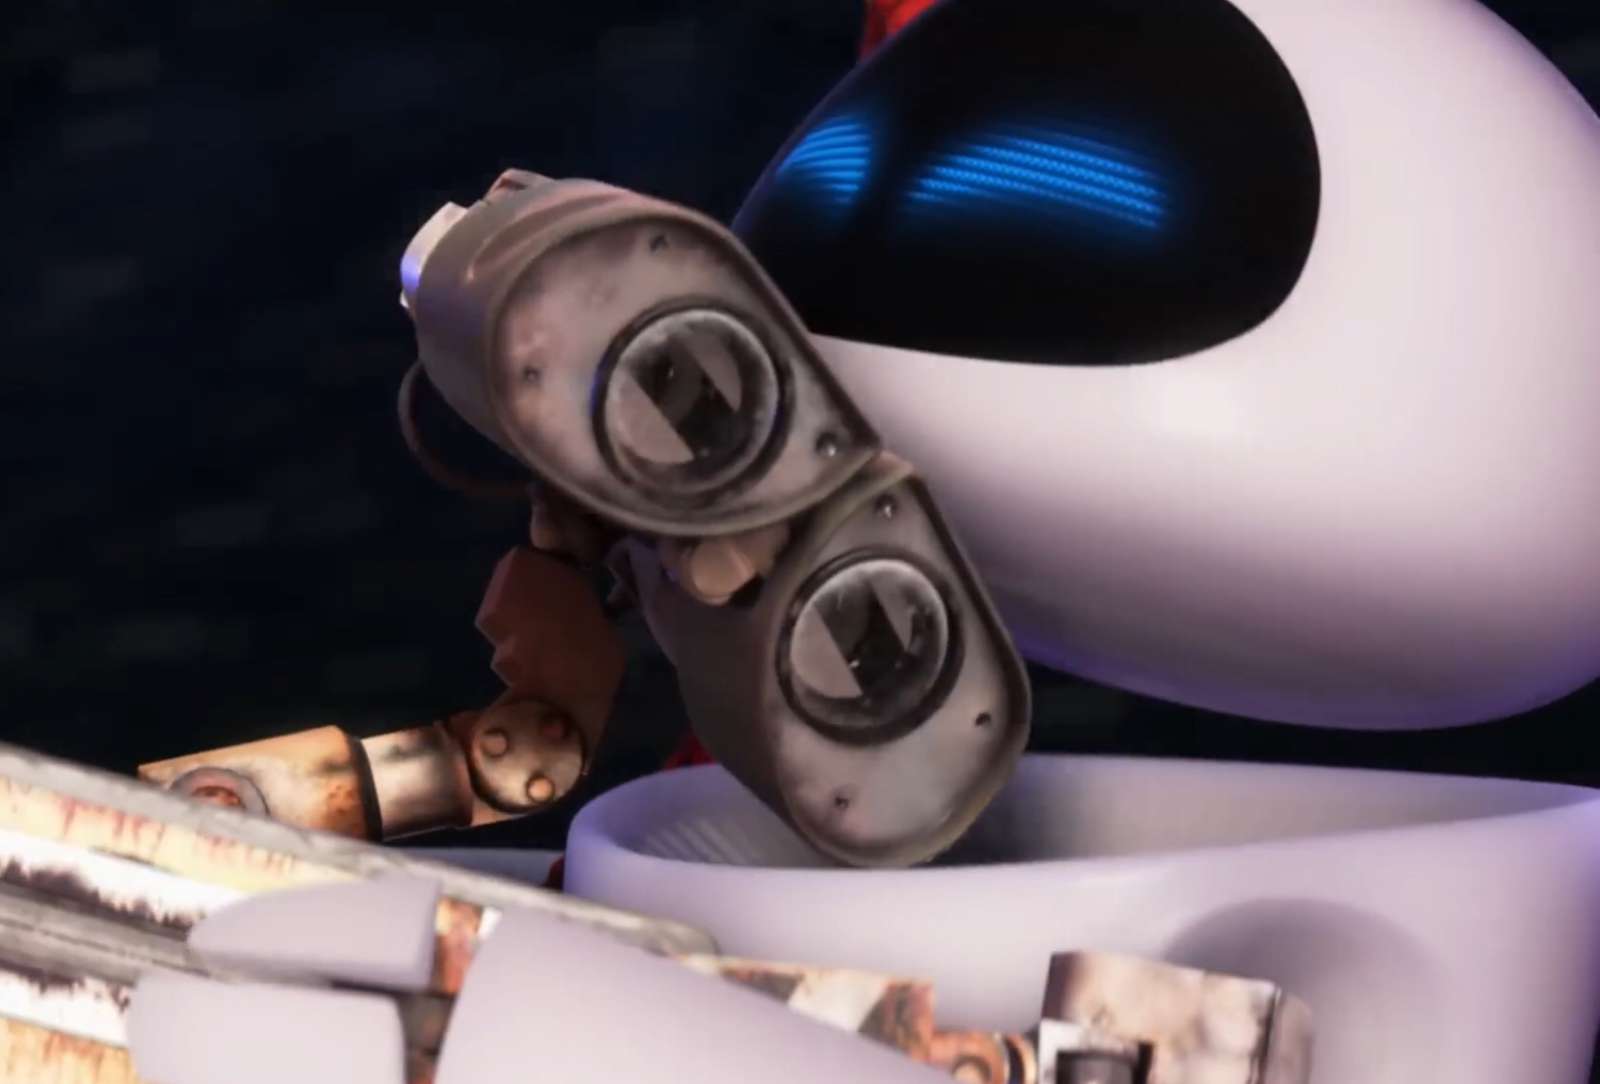 WALL-E X Eve❤️❤️❤️❤️❤️❤️❤️ онлайн пъзел